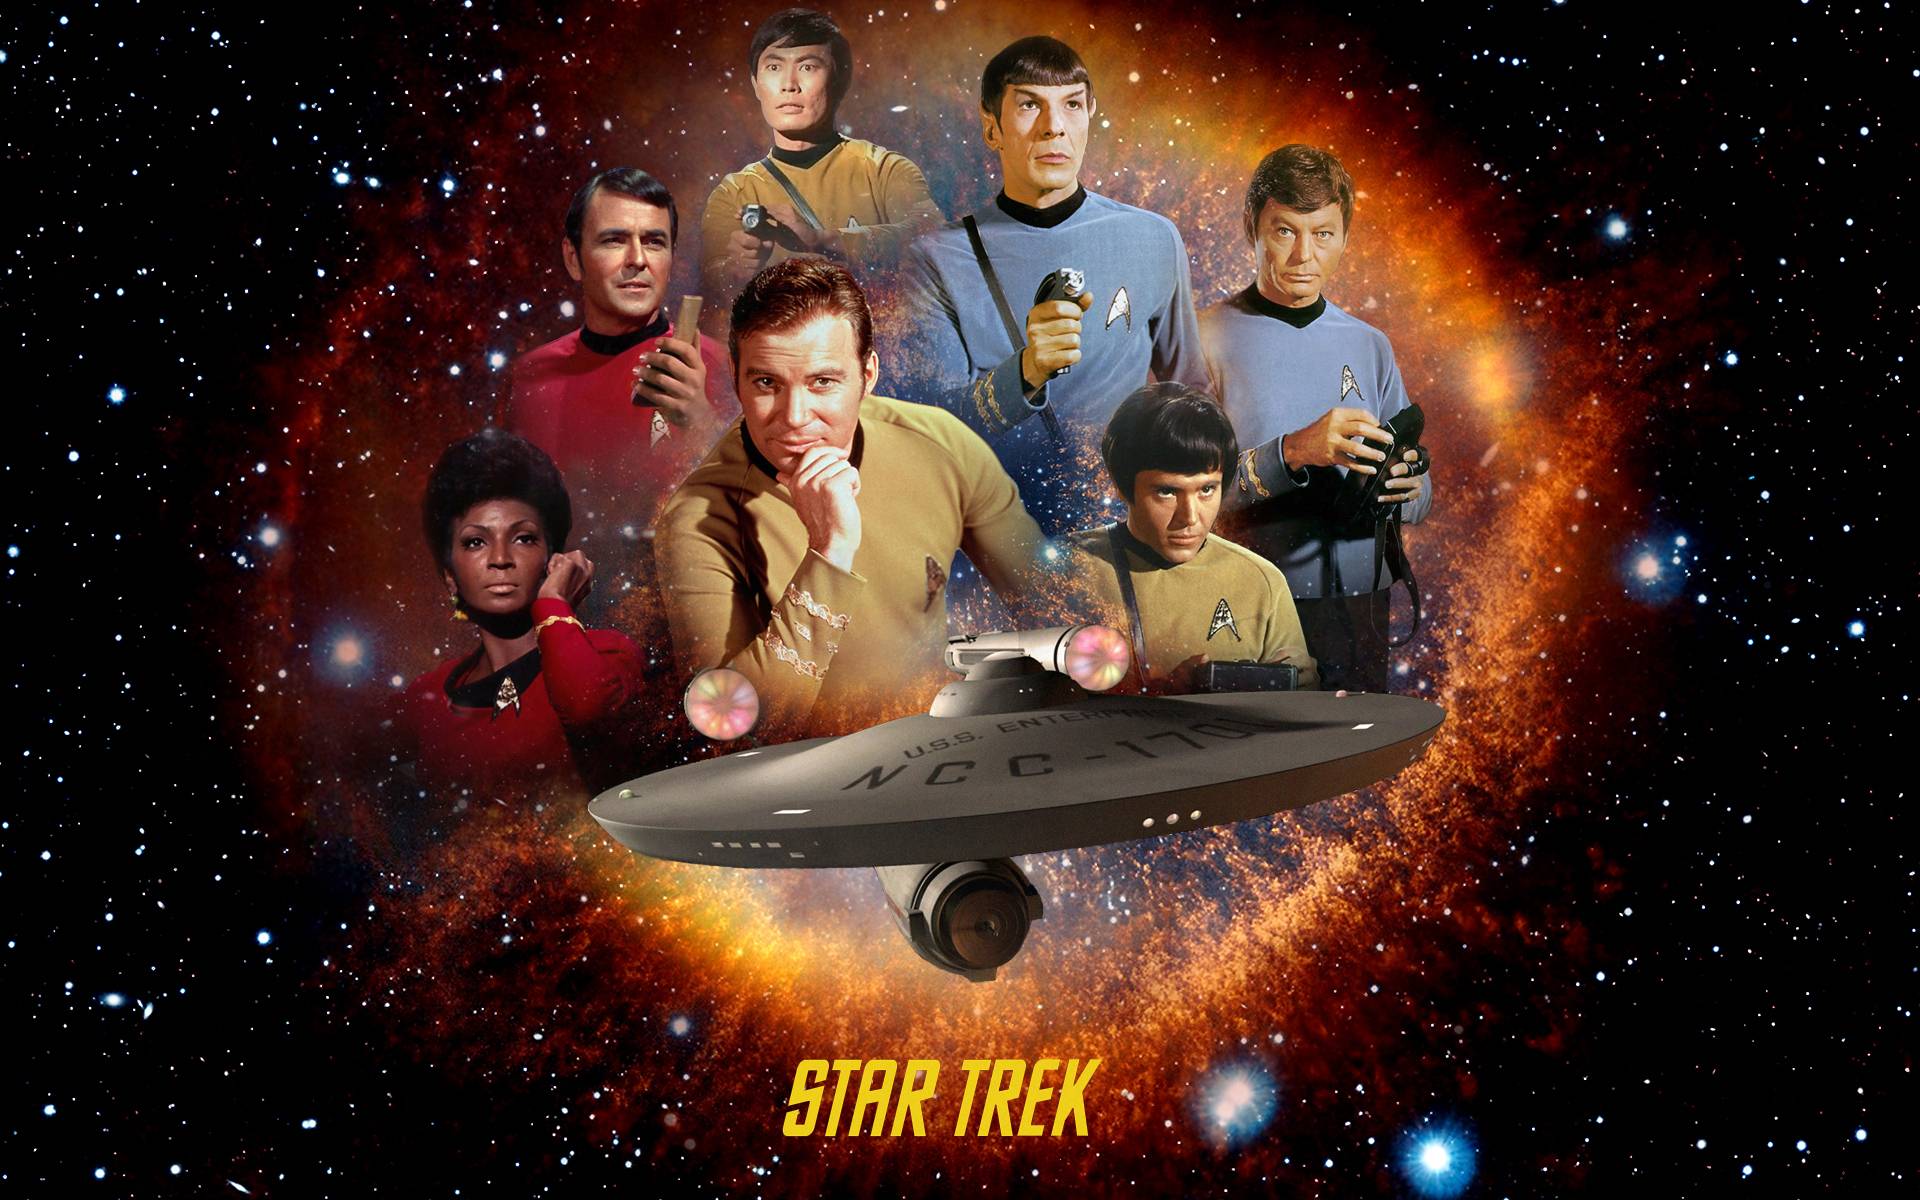 Star Trek Original Series Wallpaper Free Star Trek Original Series Background